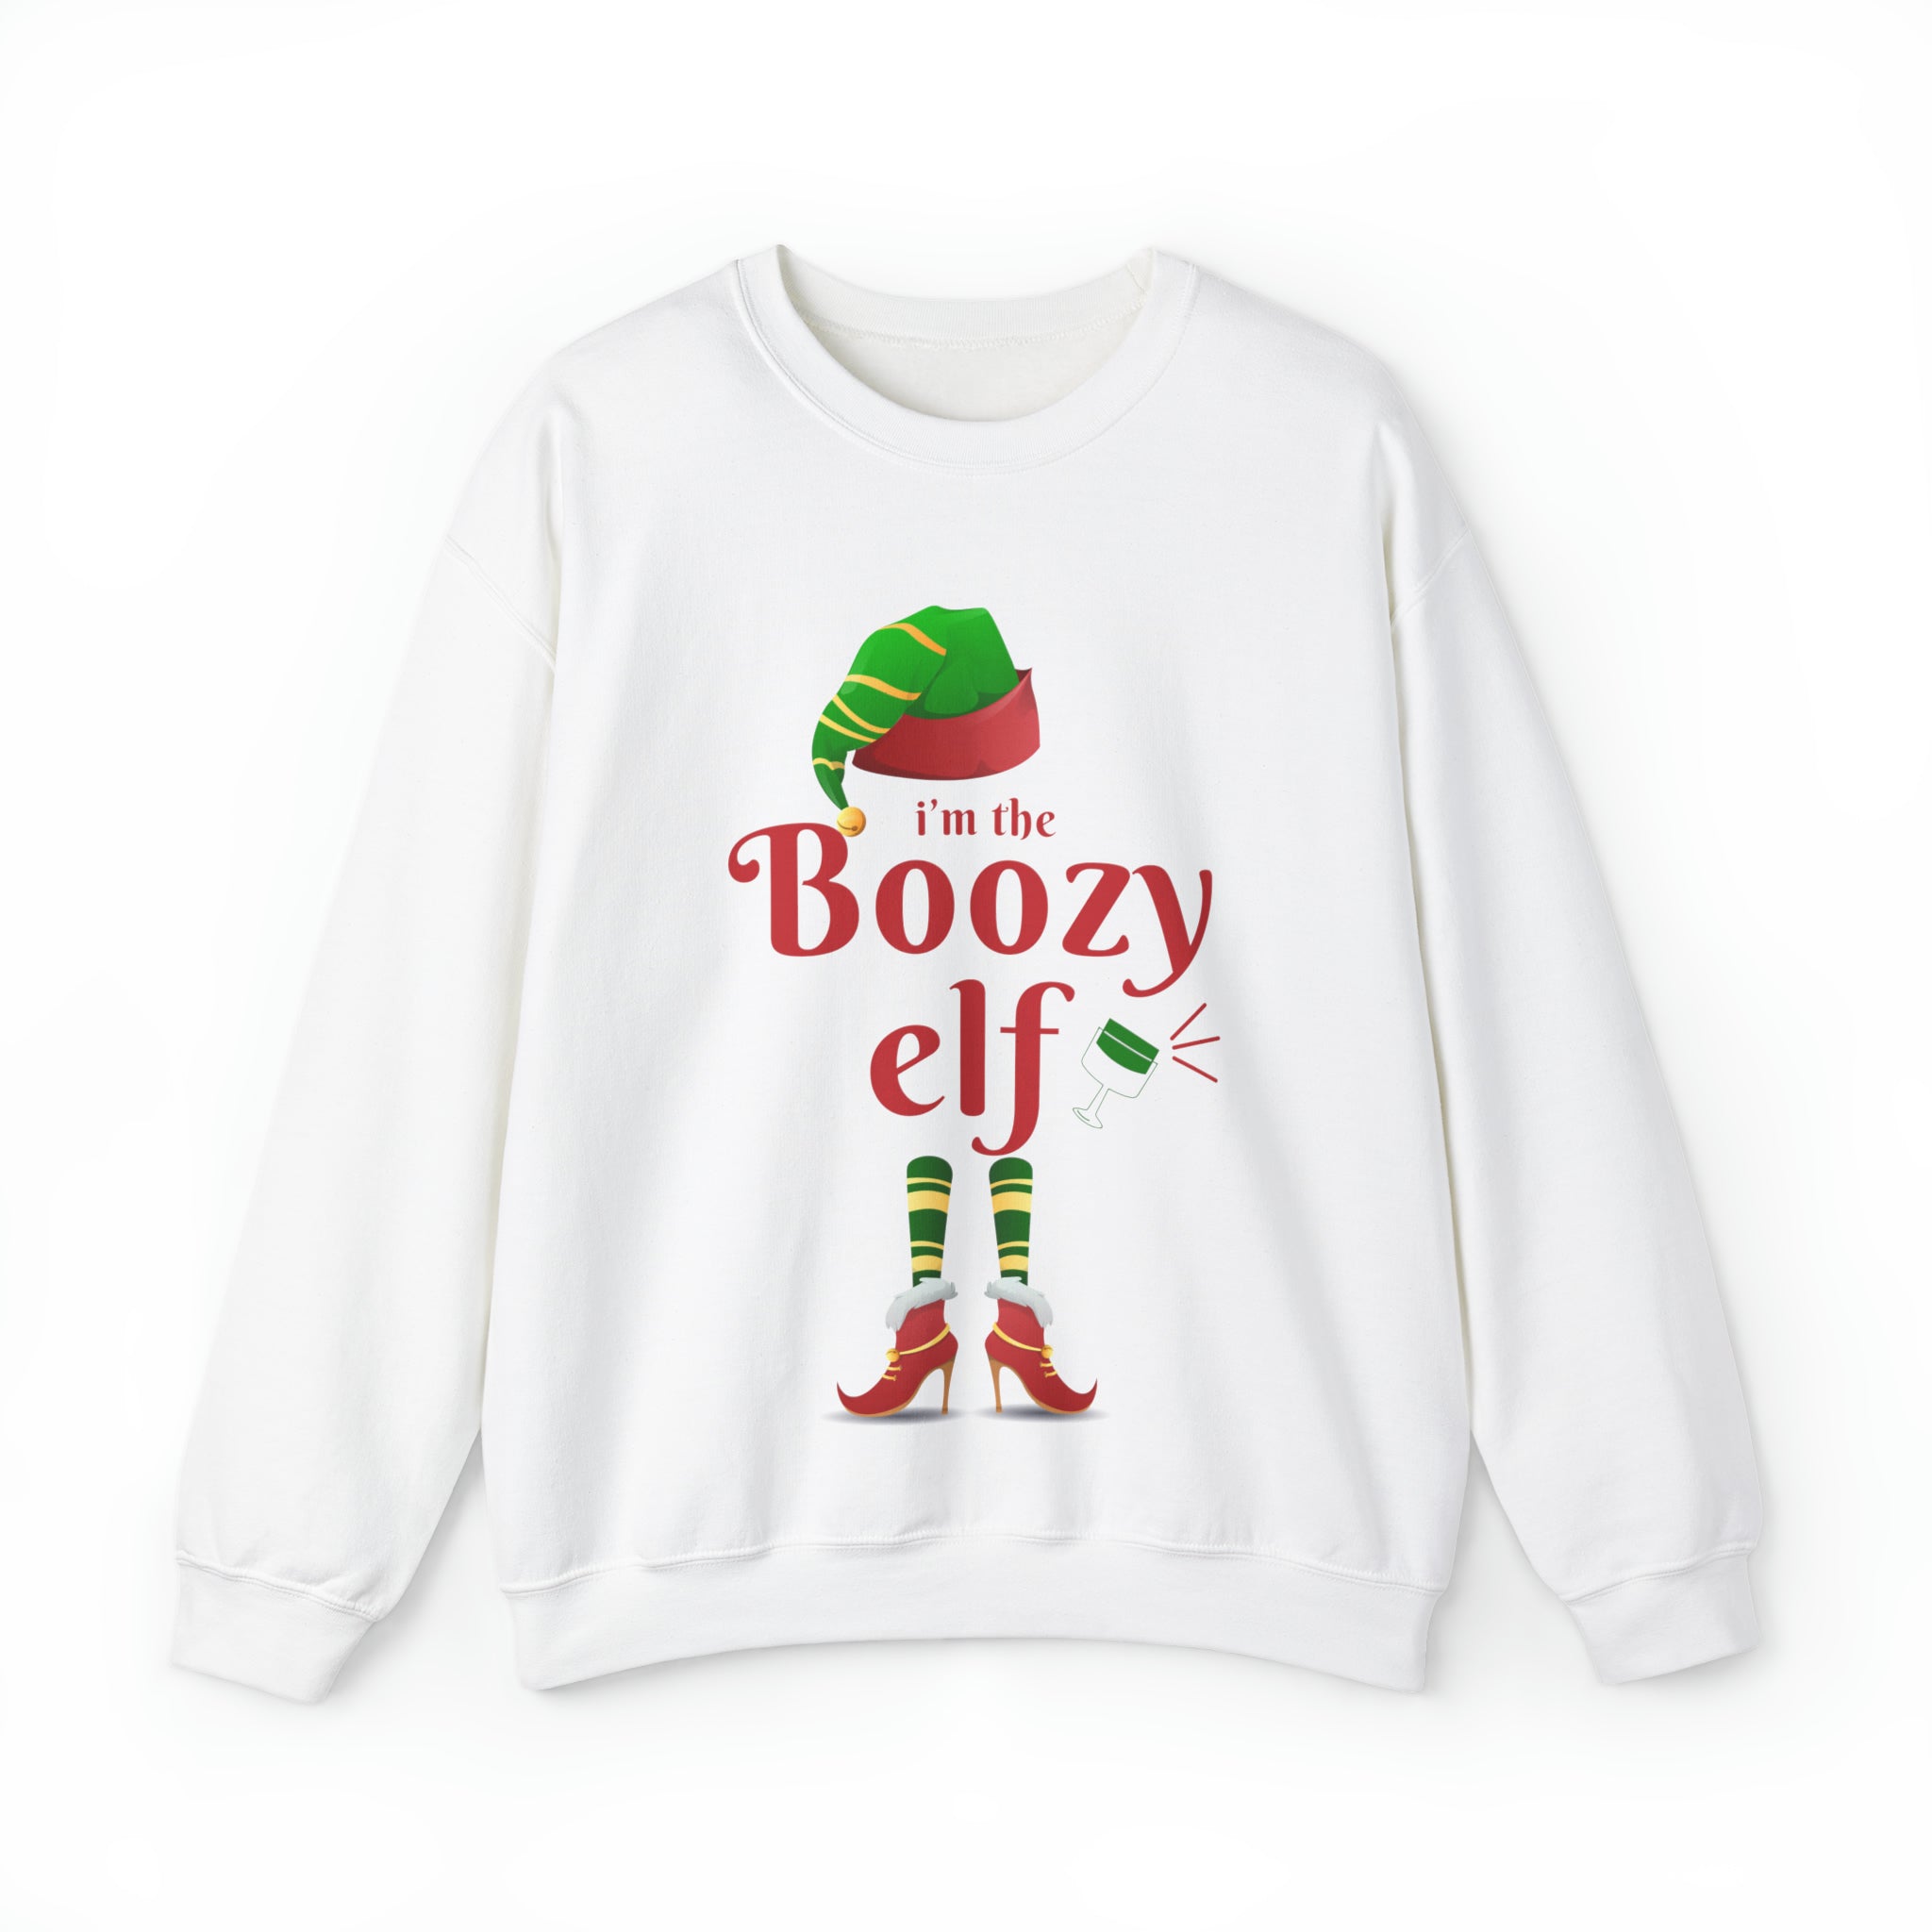 Boozy Elf holiday crew neck